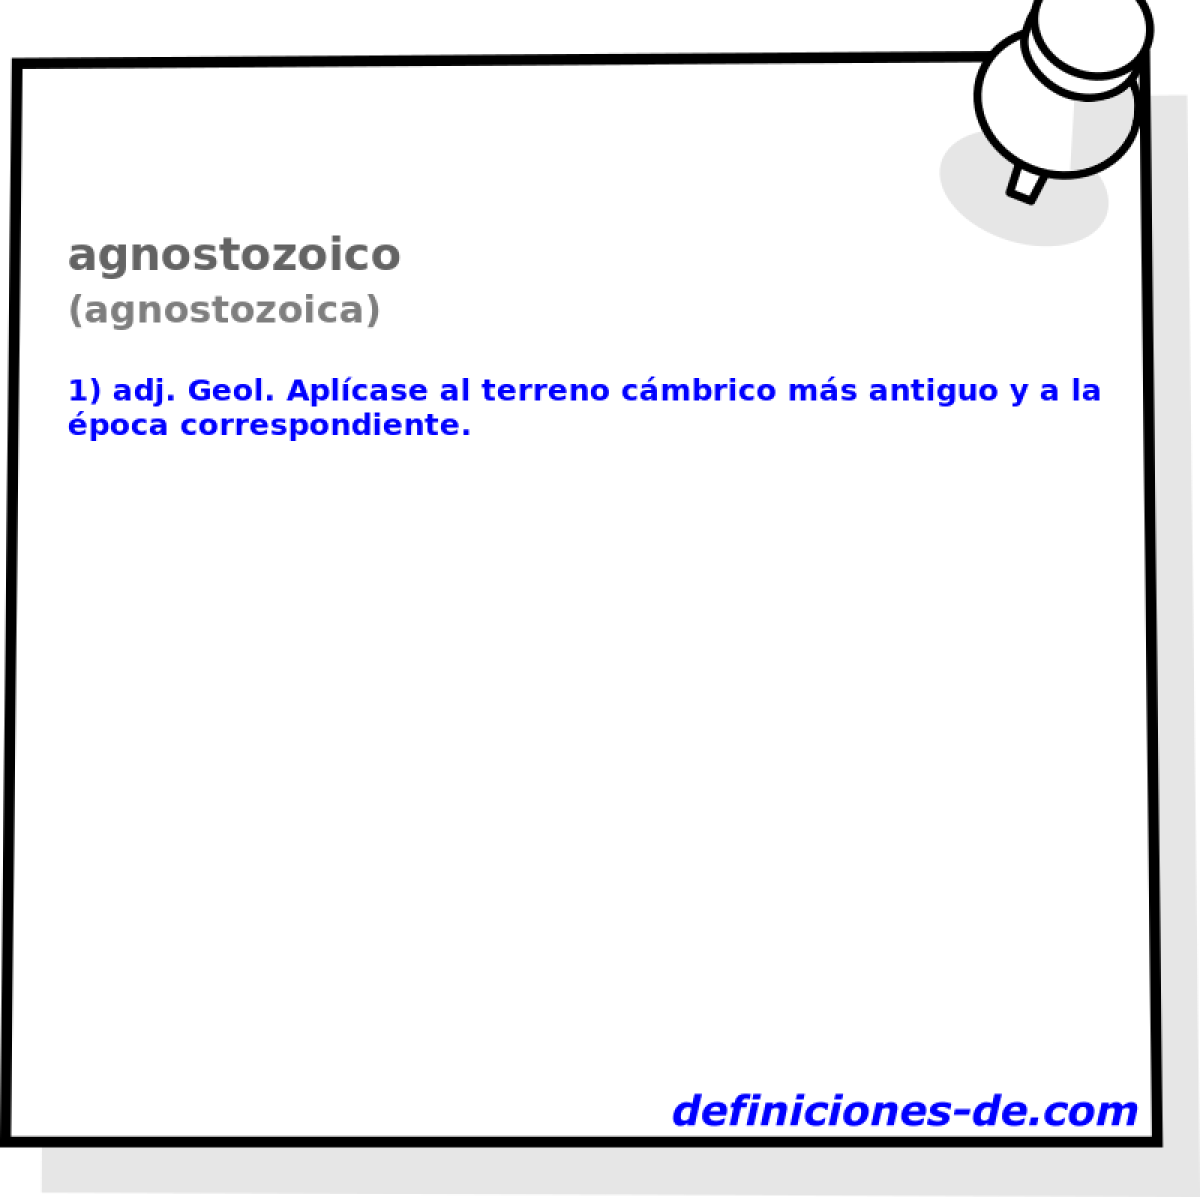 agnostozoico (agnostozoica)